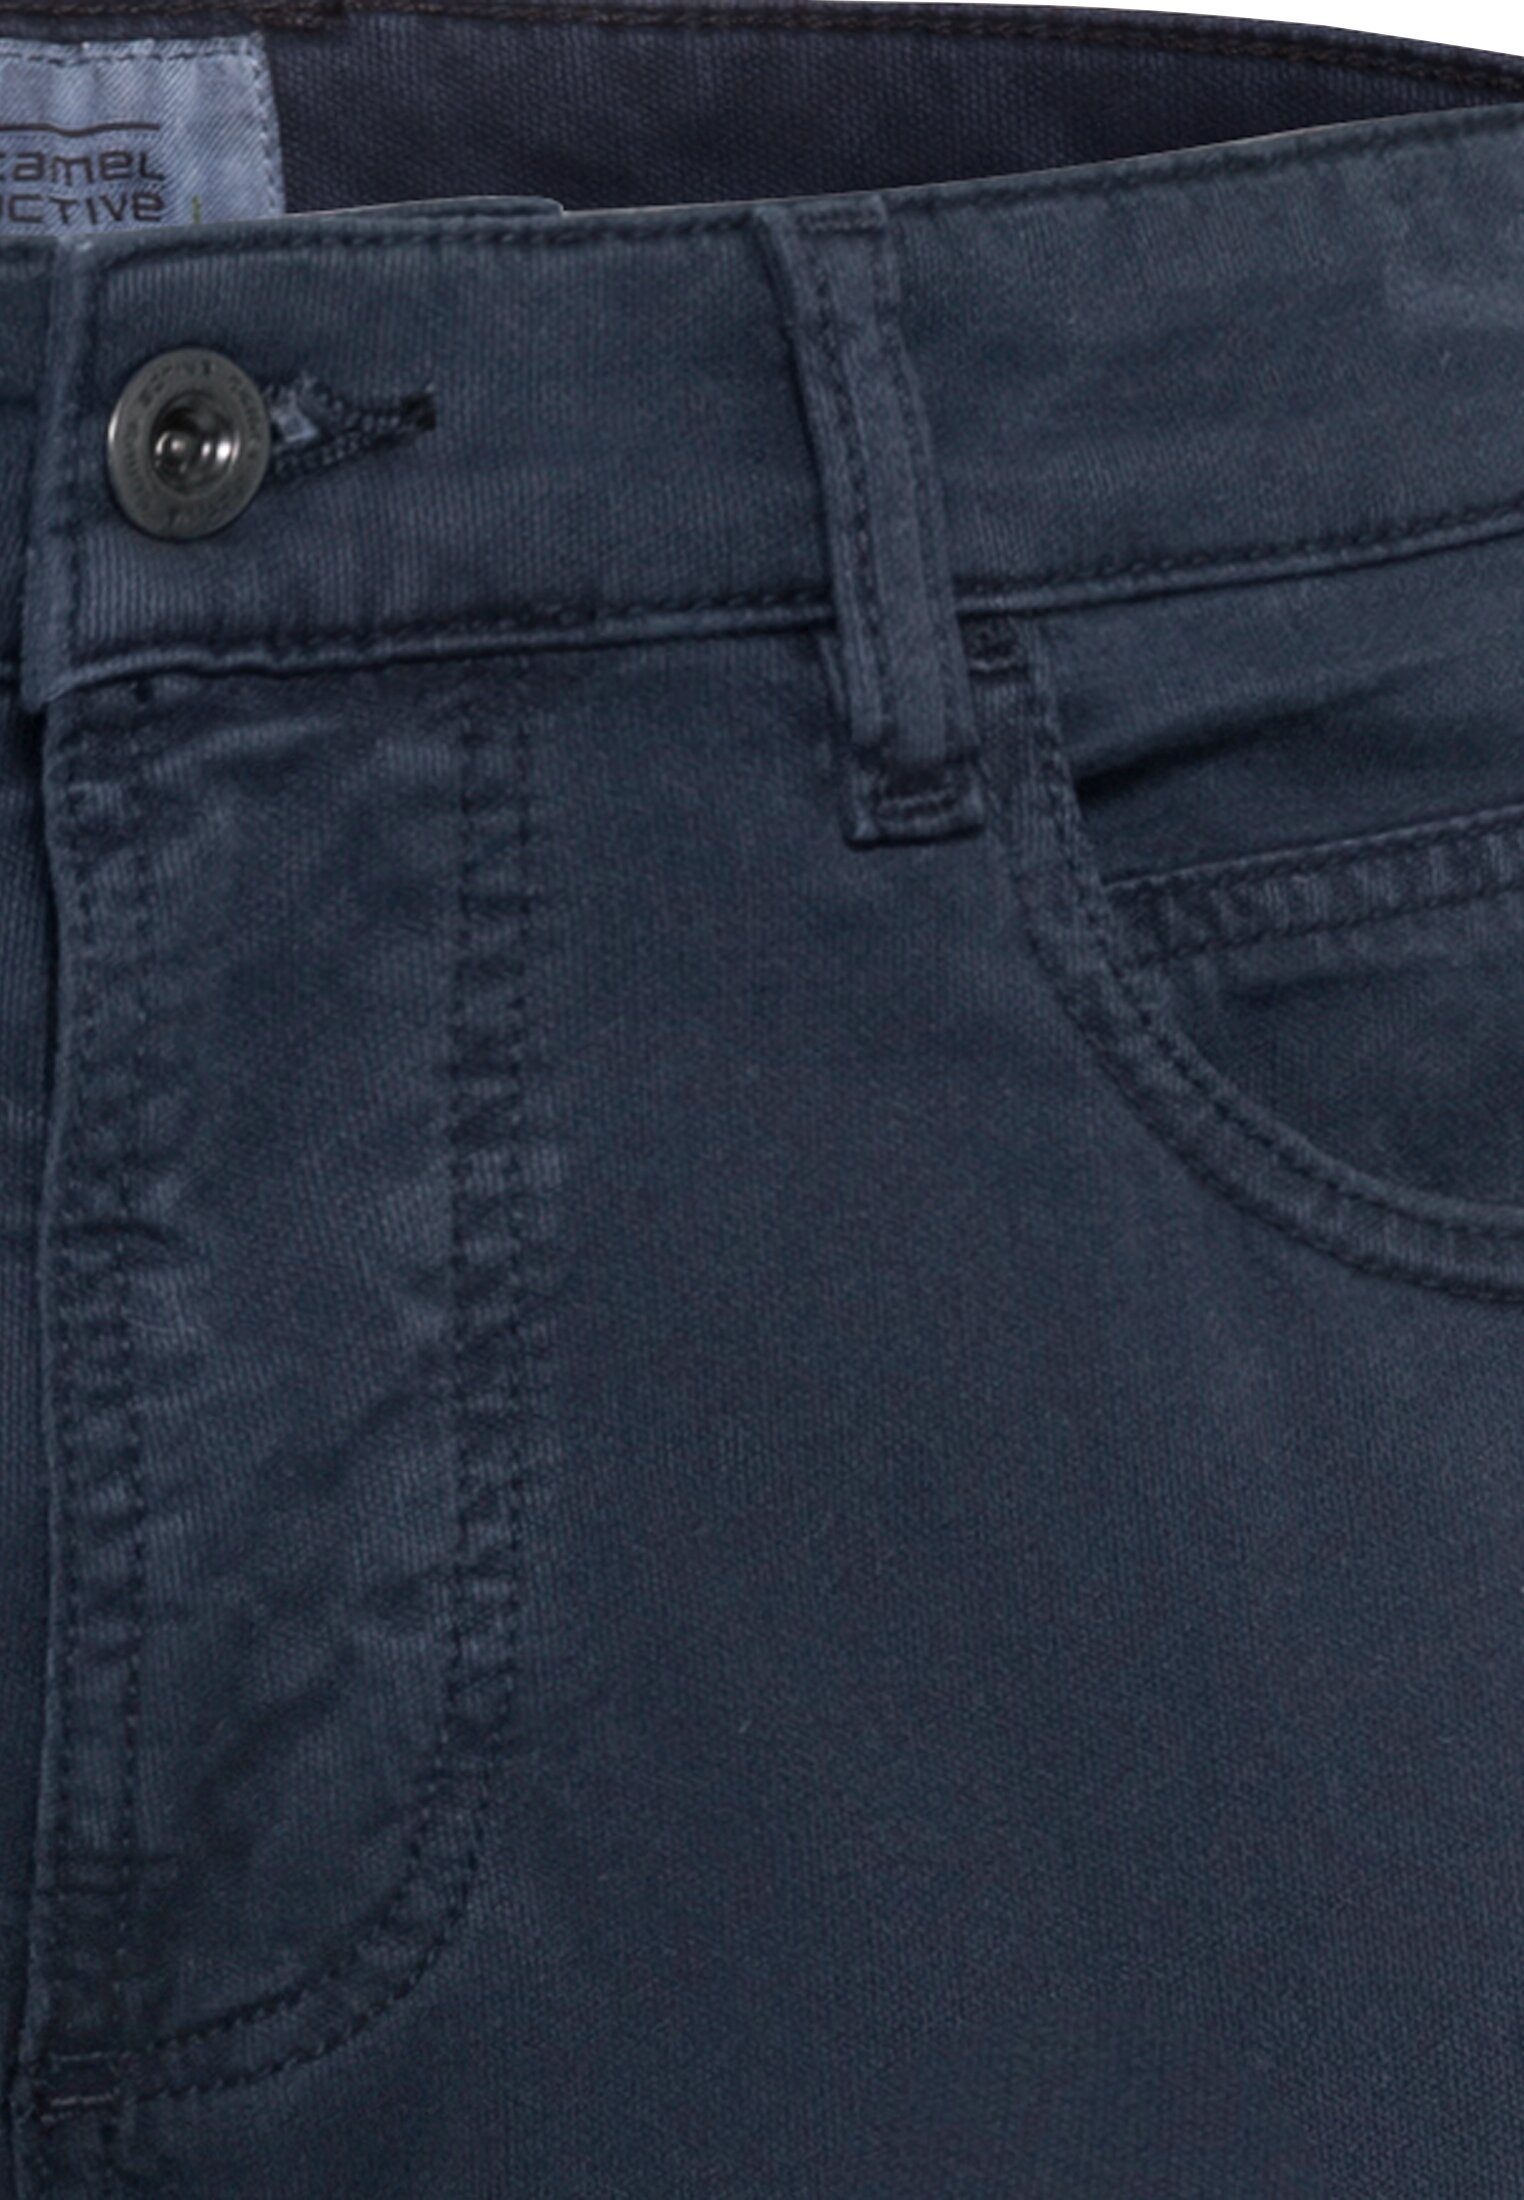 camel active 5-Pocket-Jeans Canvas Regular Dunkelblau Fit 5-Pocket Hose